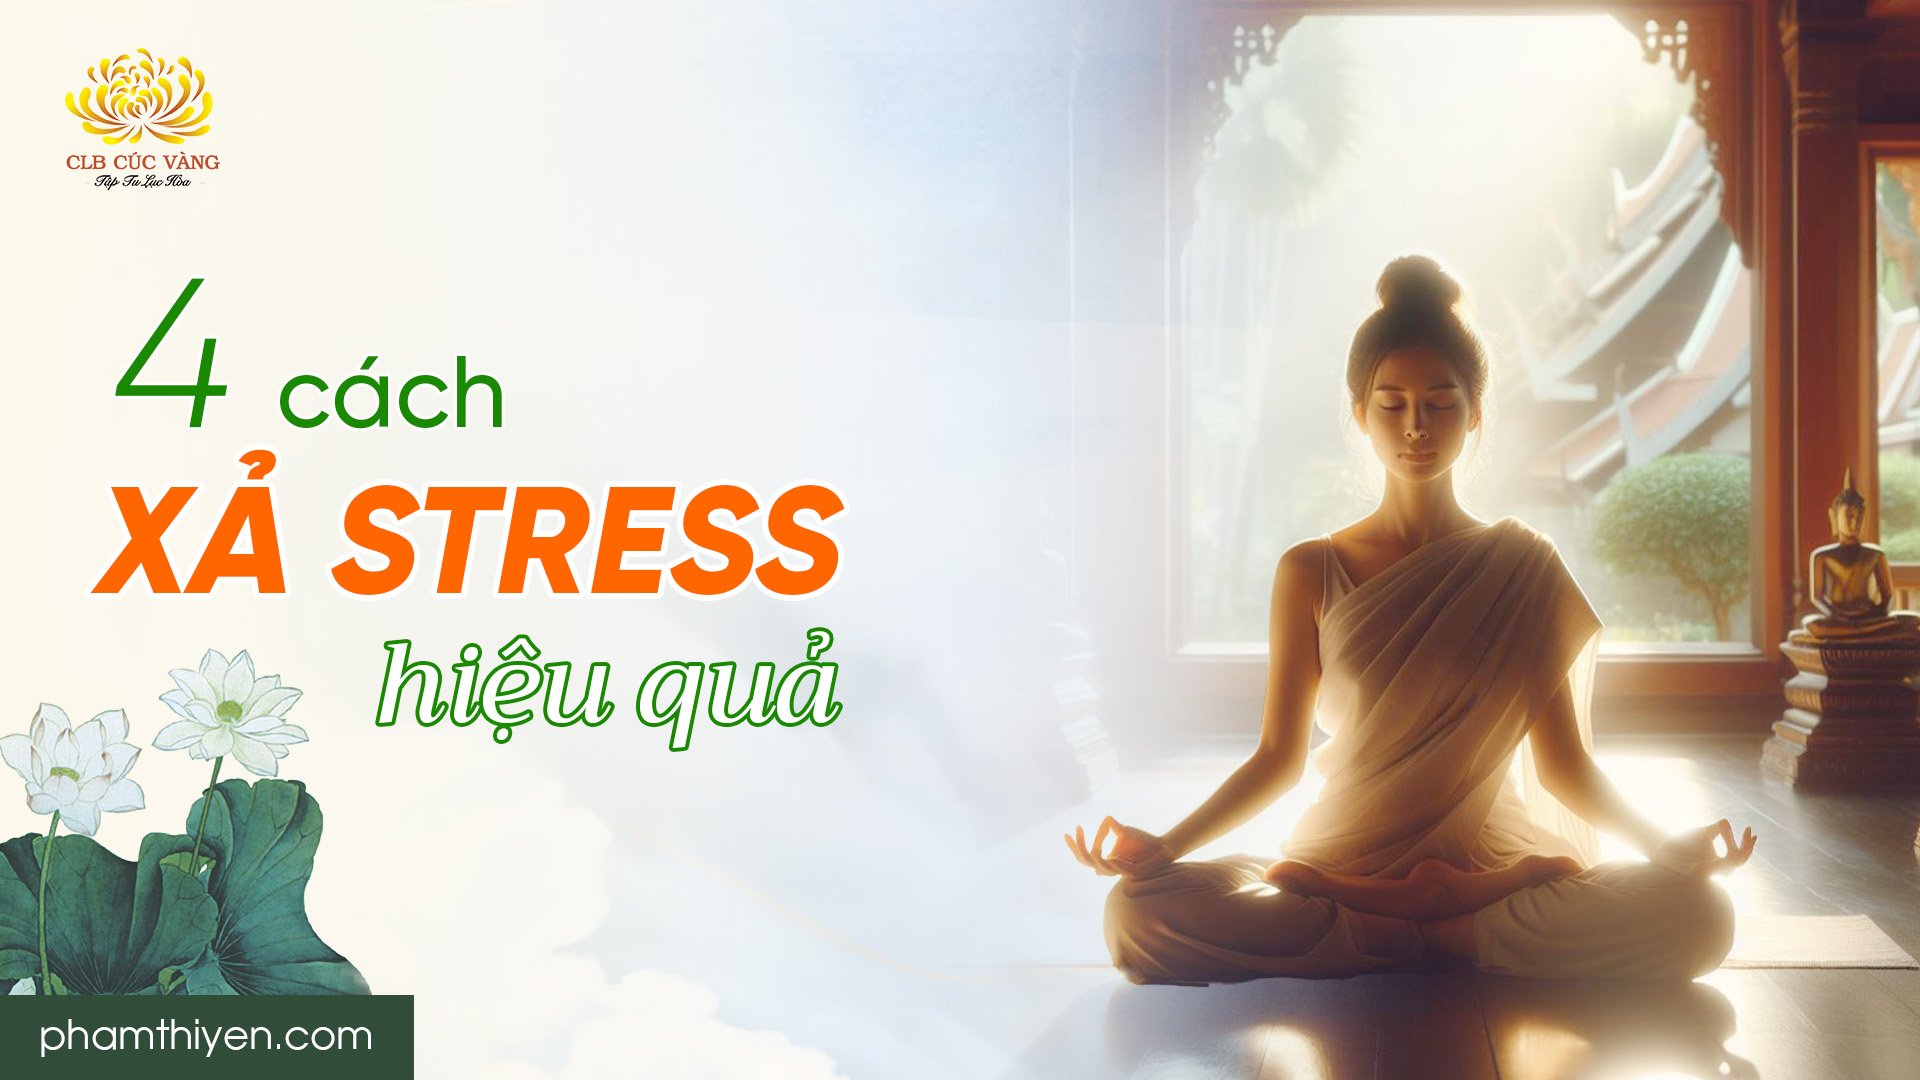 4 cách xả stress hiệu quả giúp giải tỏa căng thẳng, cân bằng cuộc sống